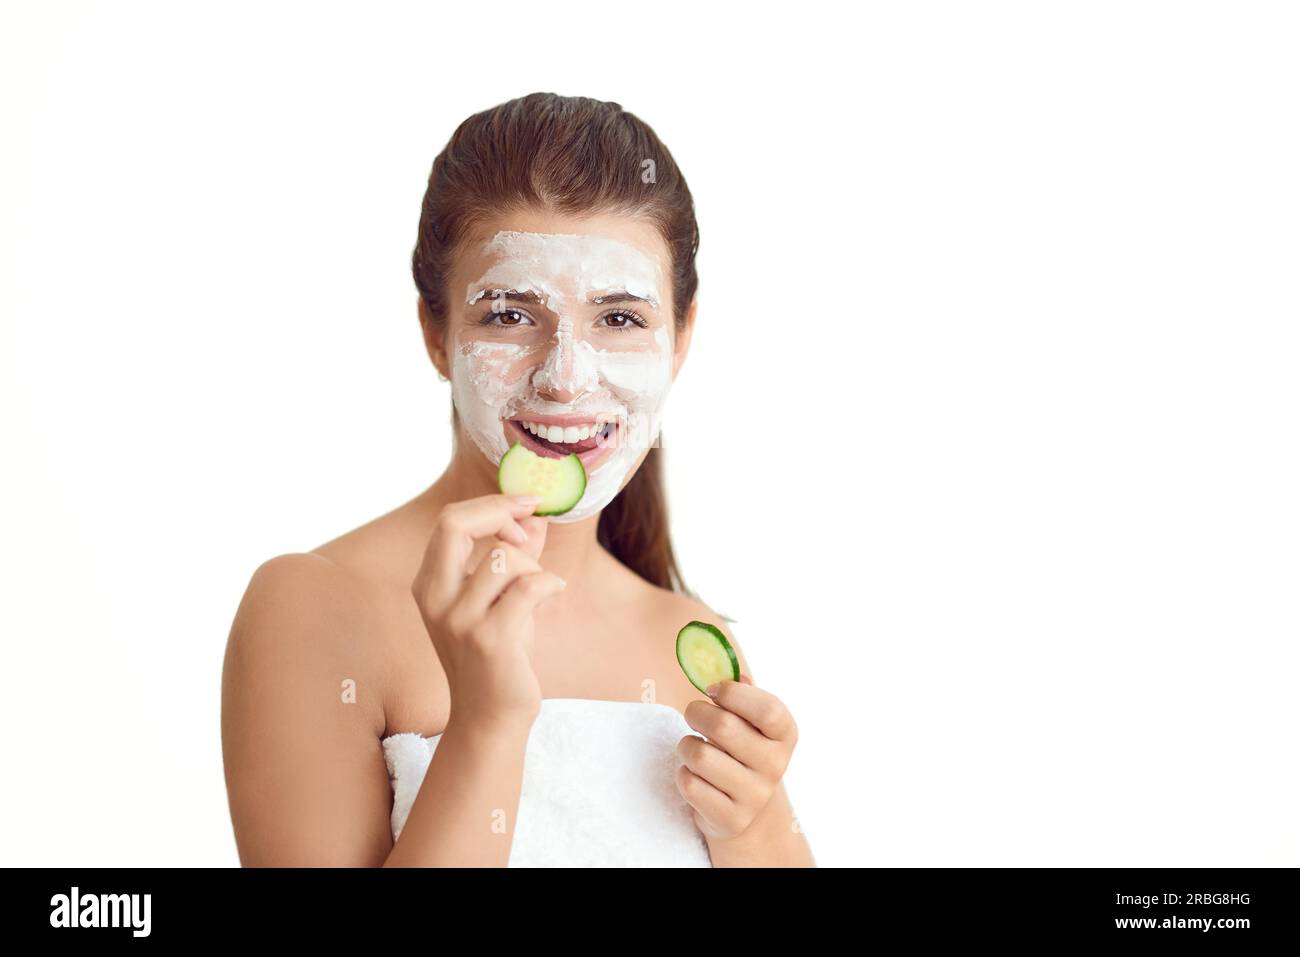 Souriant jeune femme attrayante dans une serviette portant un traitement de masque facial tenant des tranches de concombre cru pour ses yeux dans un concept de spa et de beauté Banque D'Images